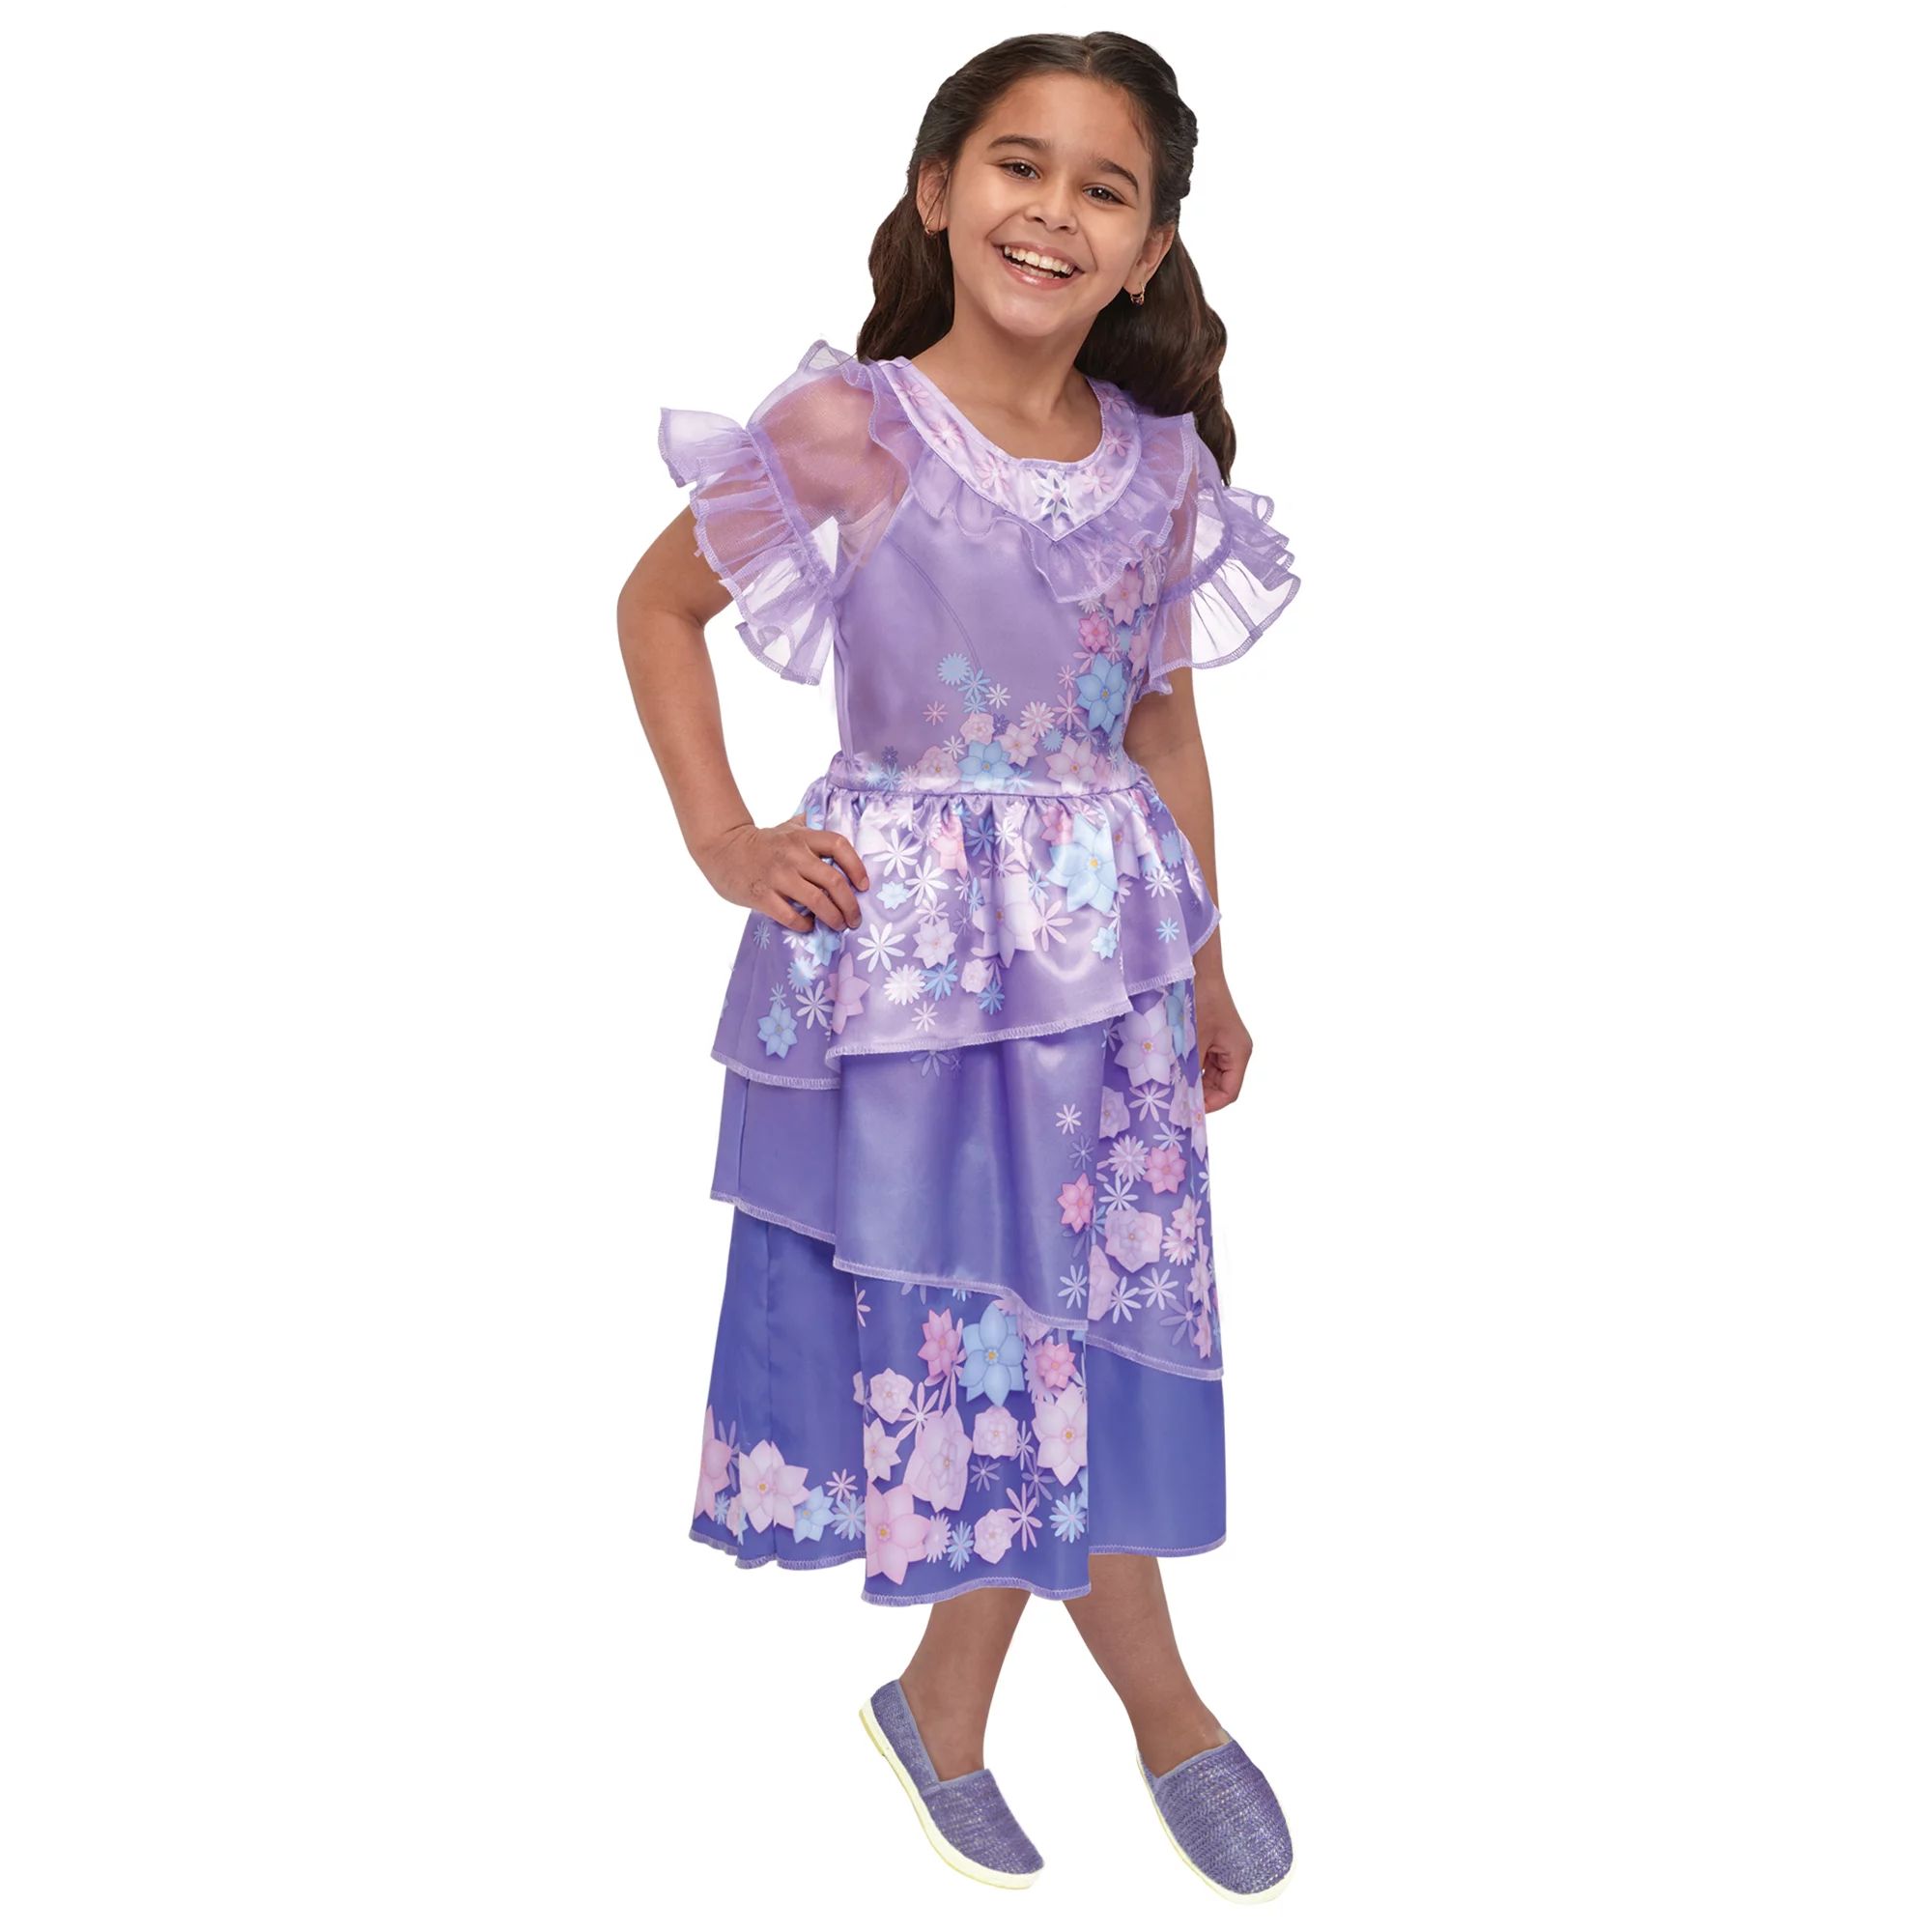 Encanto Isabela Dress for Child - Walmart.com | Walmart (US)